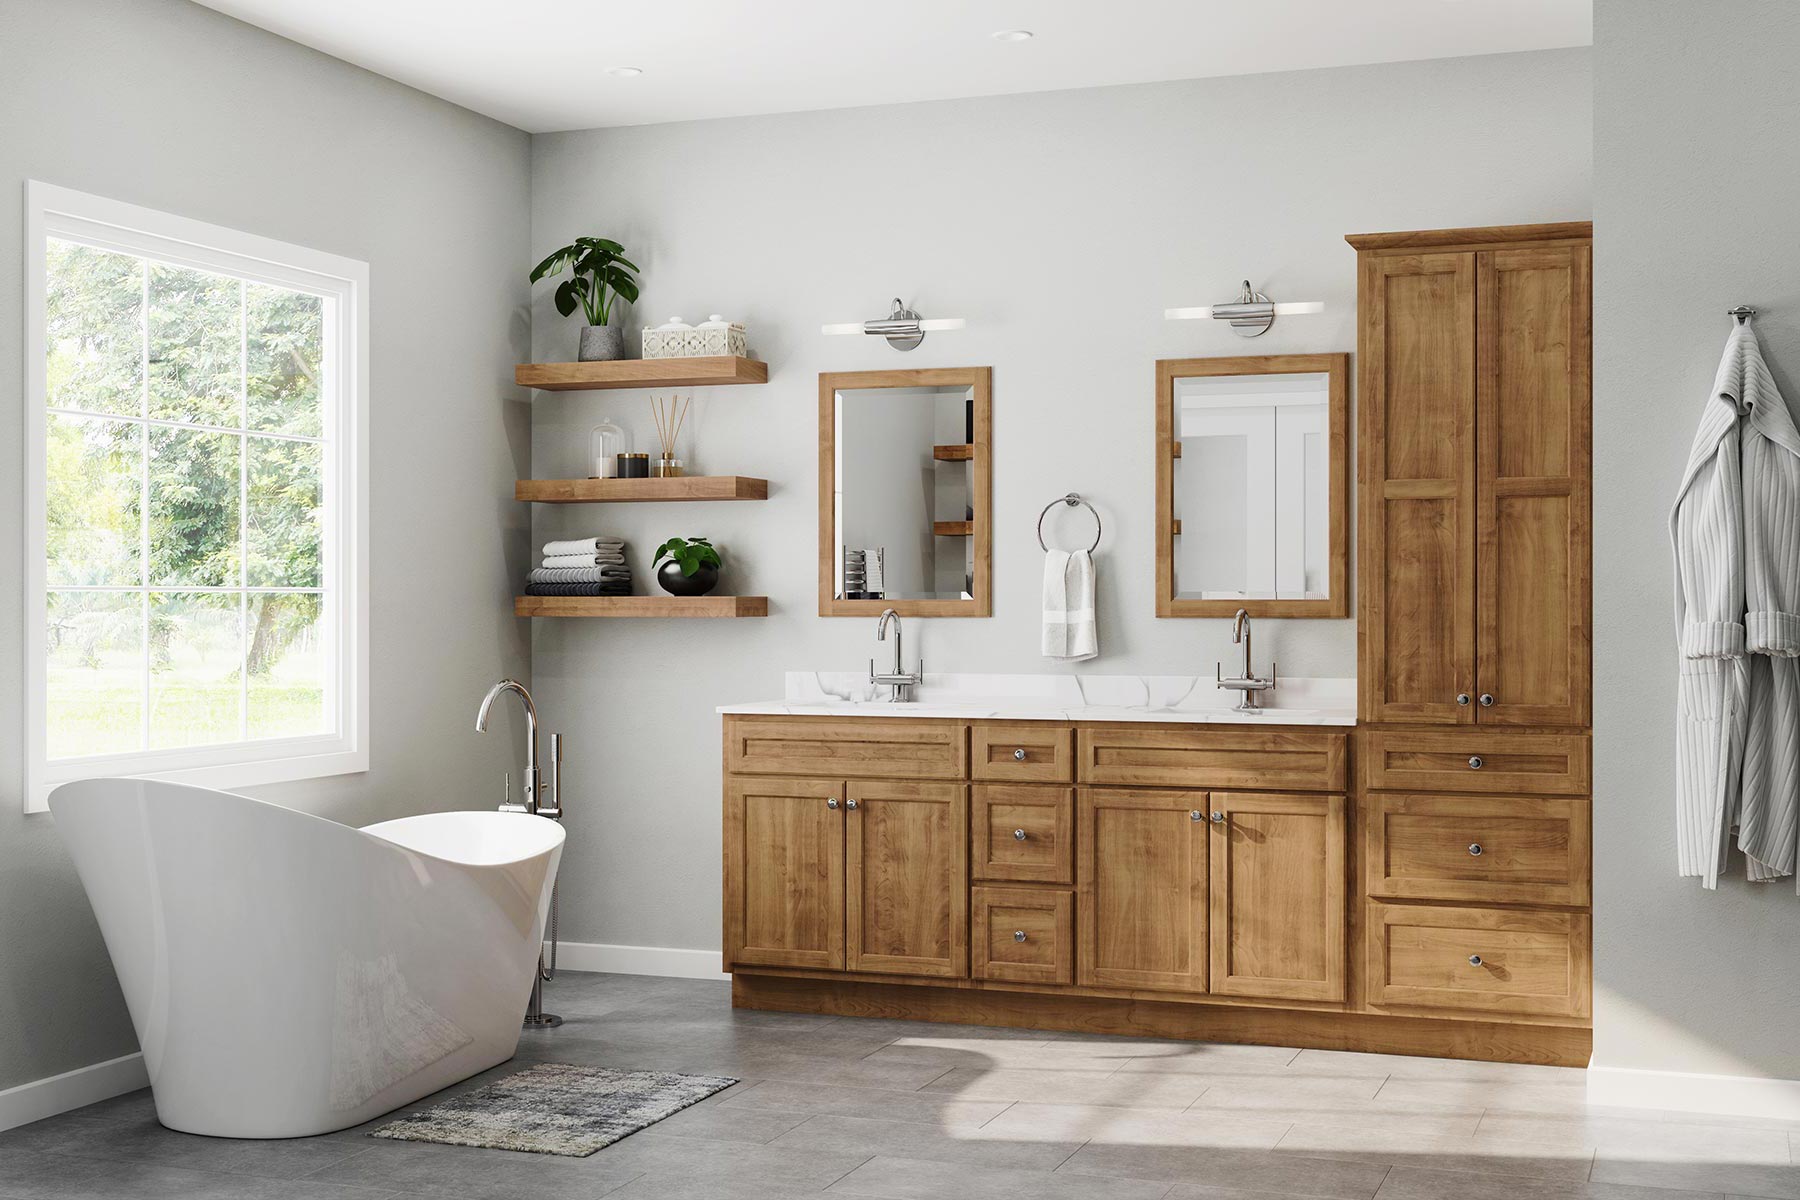 Bathroom Vanity To Match Wood Floor